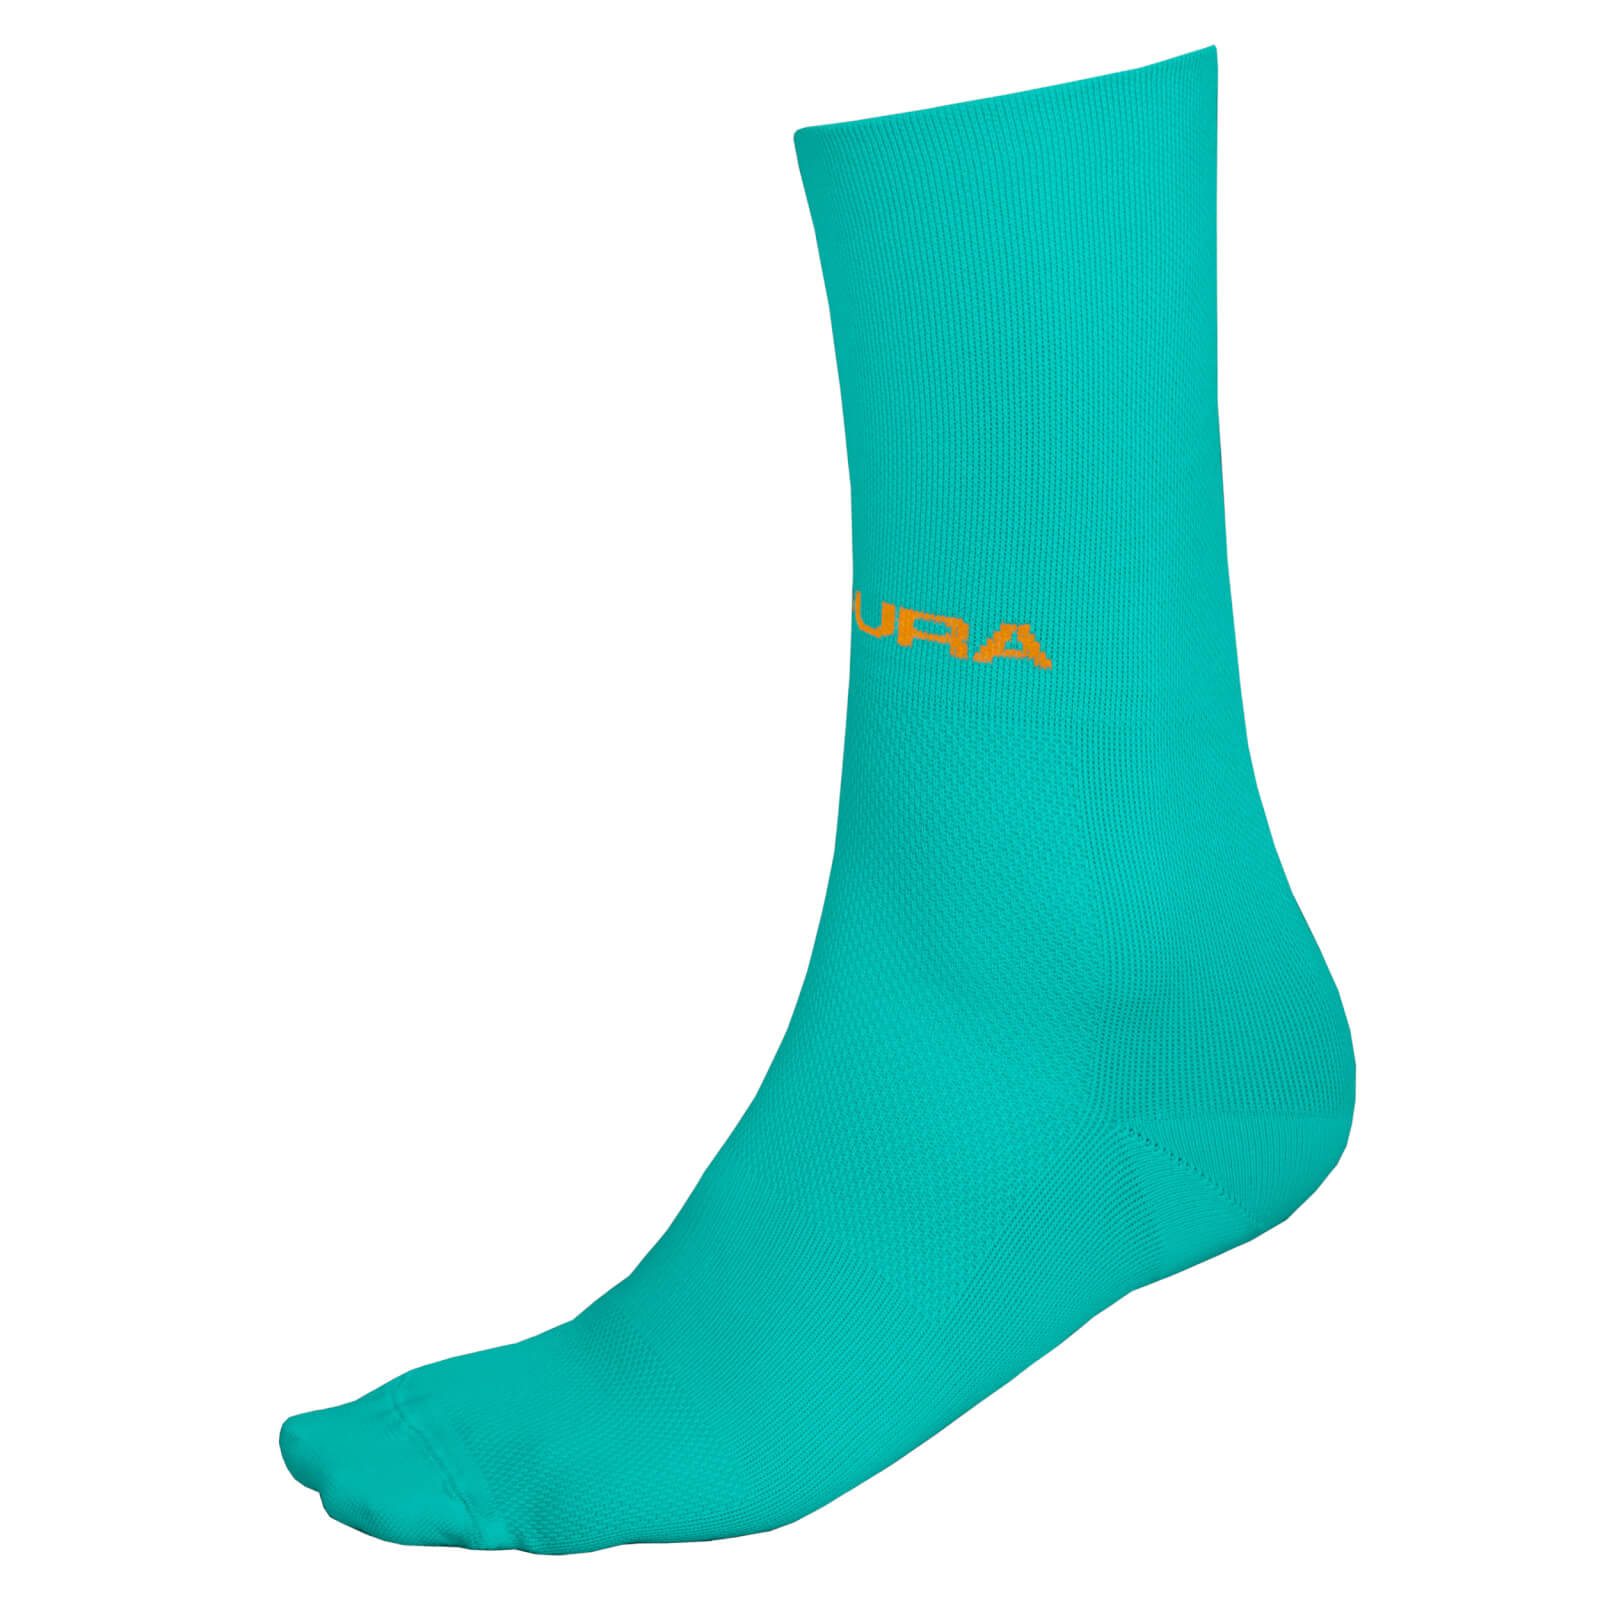 Endura Men's Pro SL Sock II - Aqua